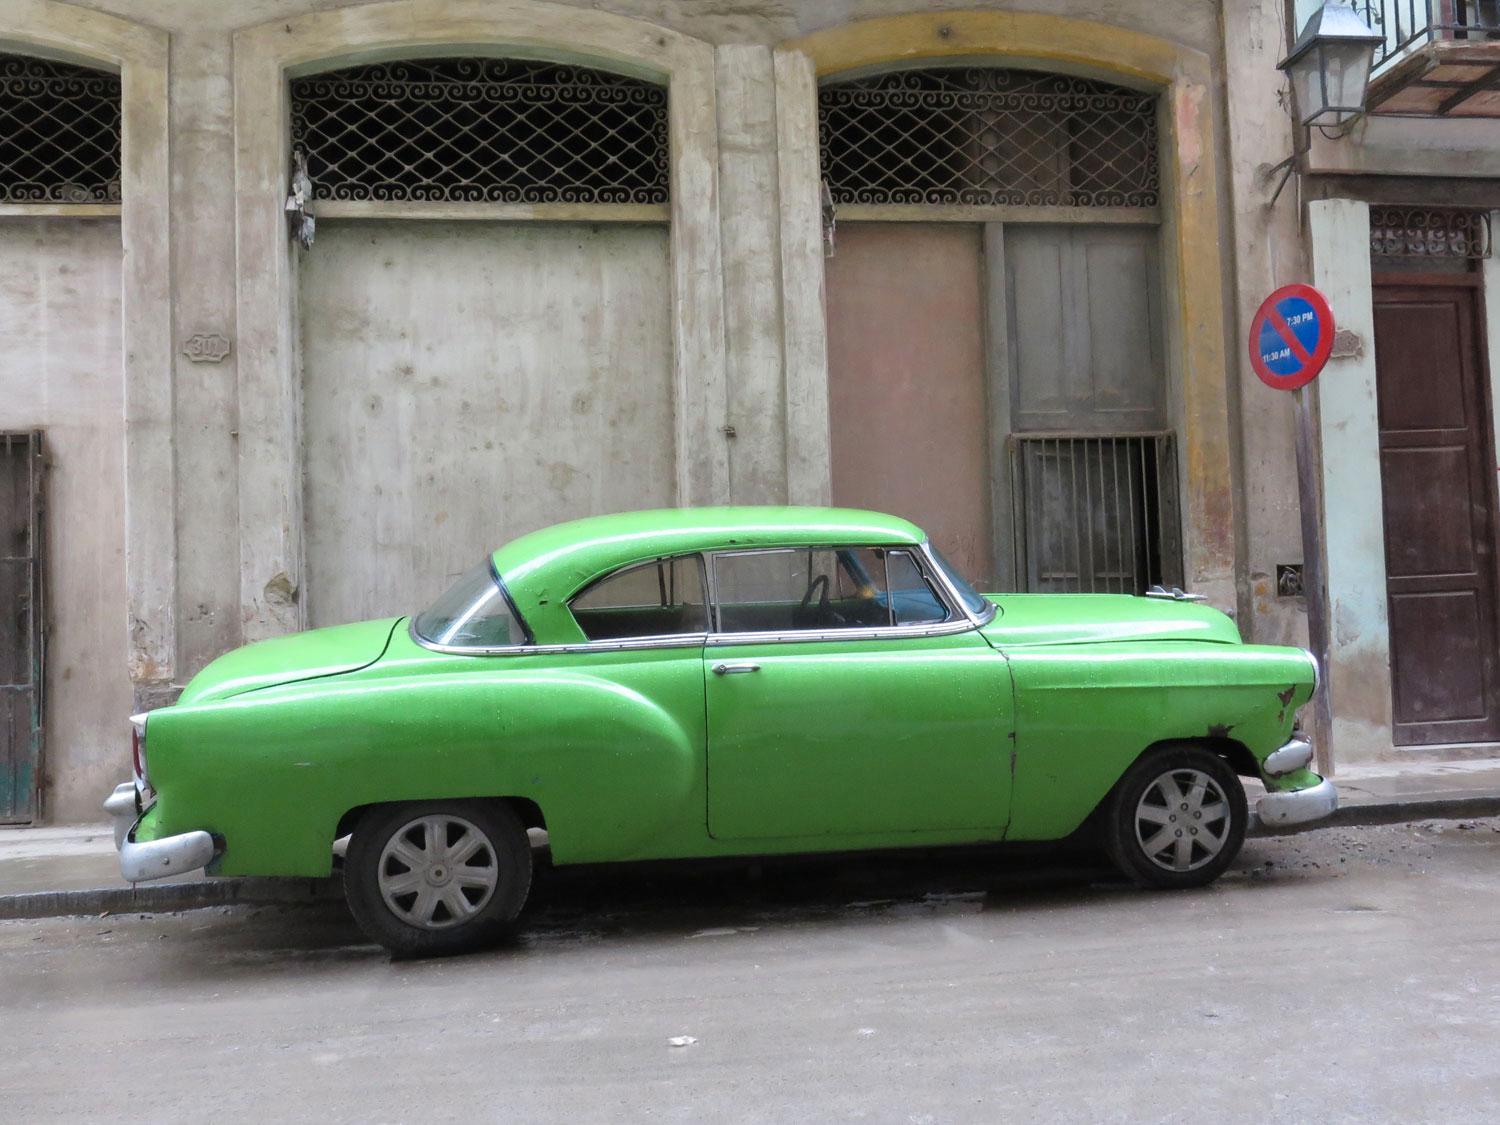 Grönt är skönt, även felparkerat utanför sportbaren Bilbao på O'Reilly-gatan i Gamla Havanna. En Ford, från 1953? Kanske.